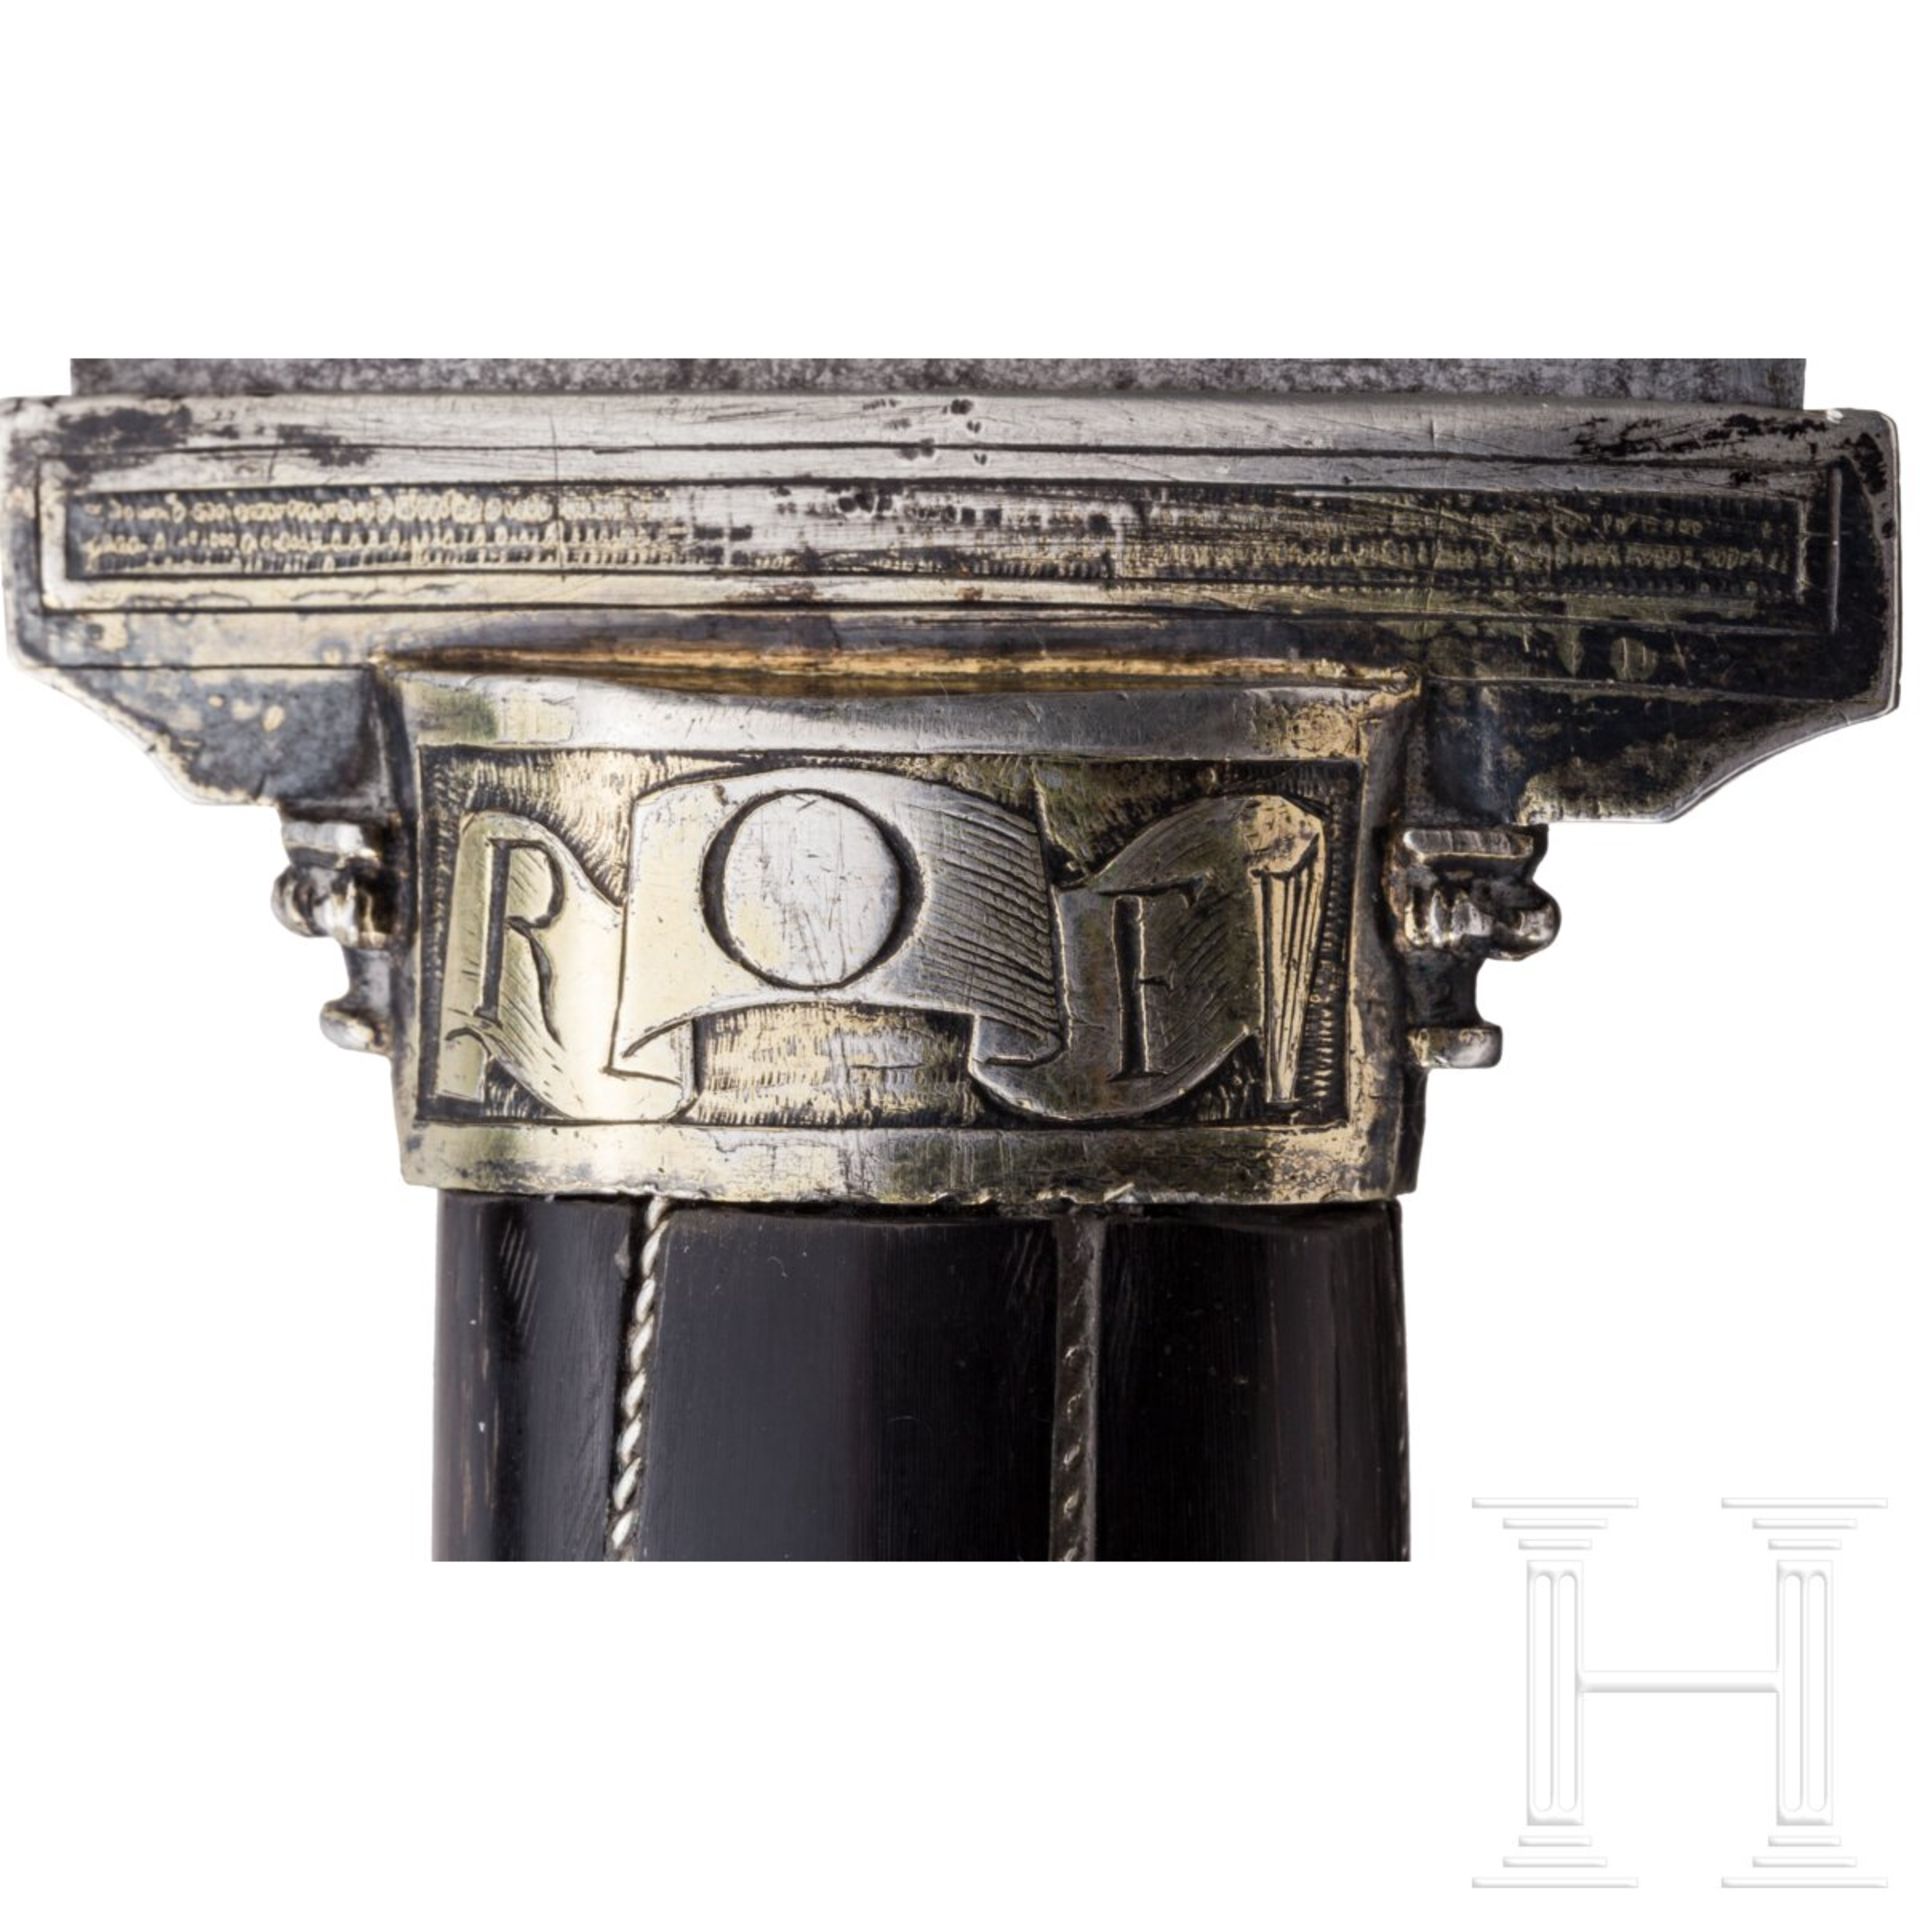 Silbermontiertes Vorlegemesser mit Griff aus Steinbockhorn, süddeutsch, 16. Jhdt. - Bild 6 aus 7